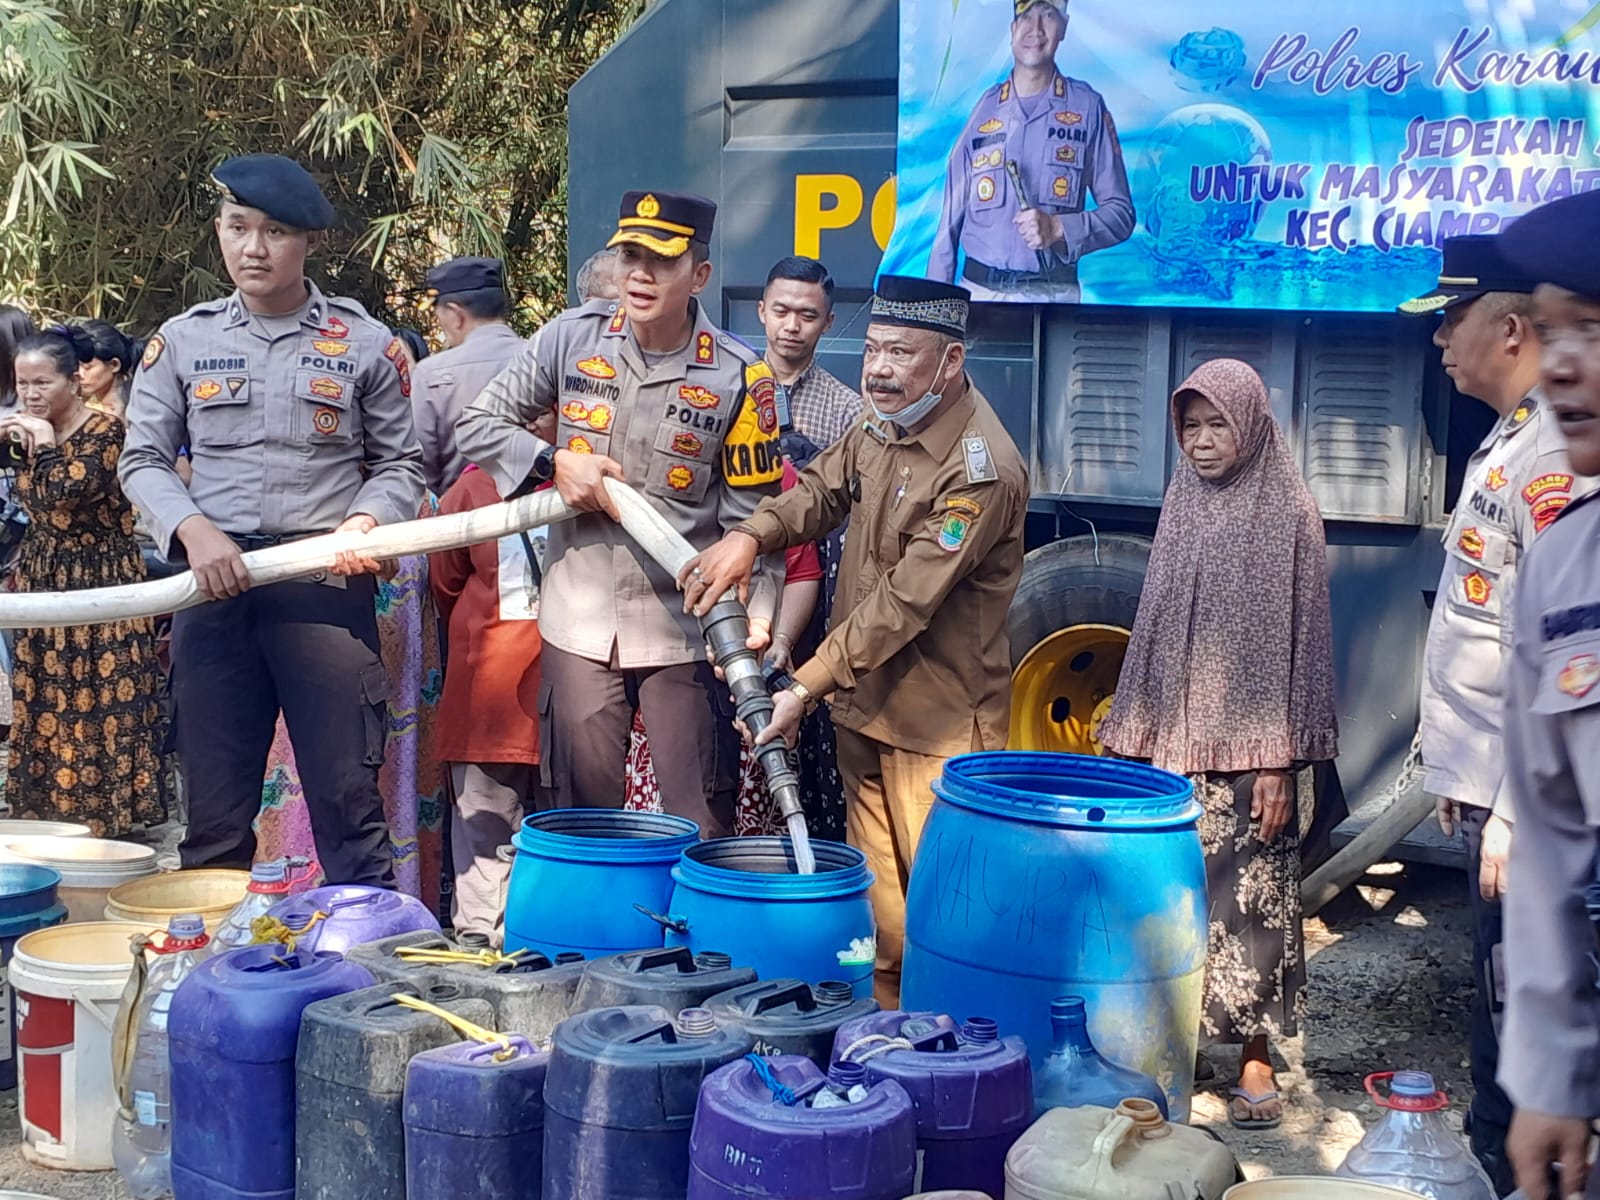 Polres Karawang Sedekahkan 15.000 Liter Air Bersih Untuk Warga Terdampak Kemarau Panjang